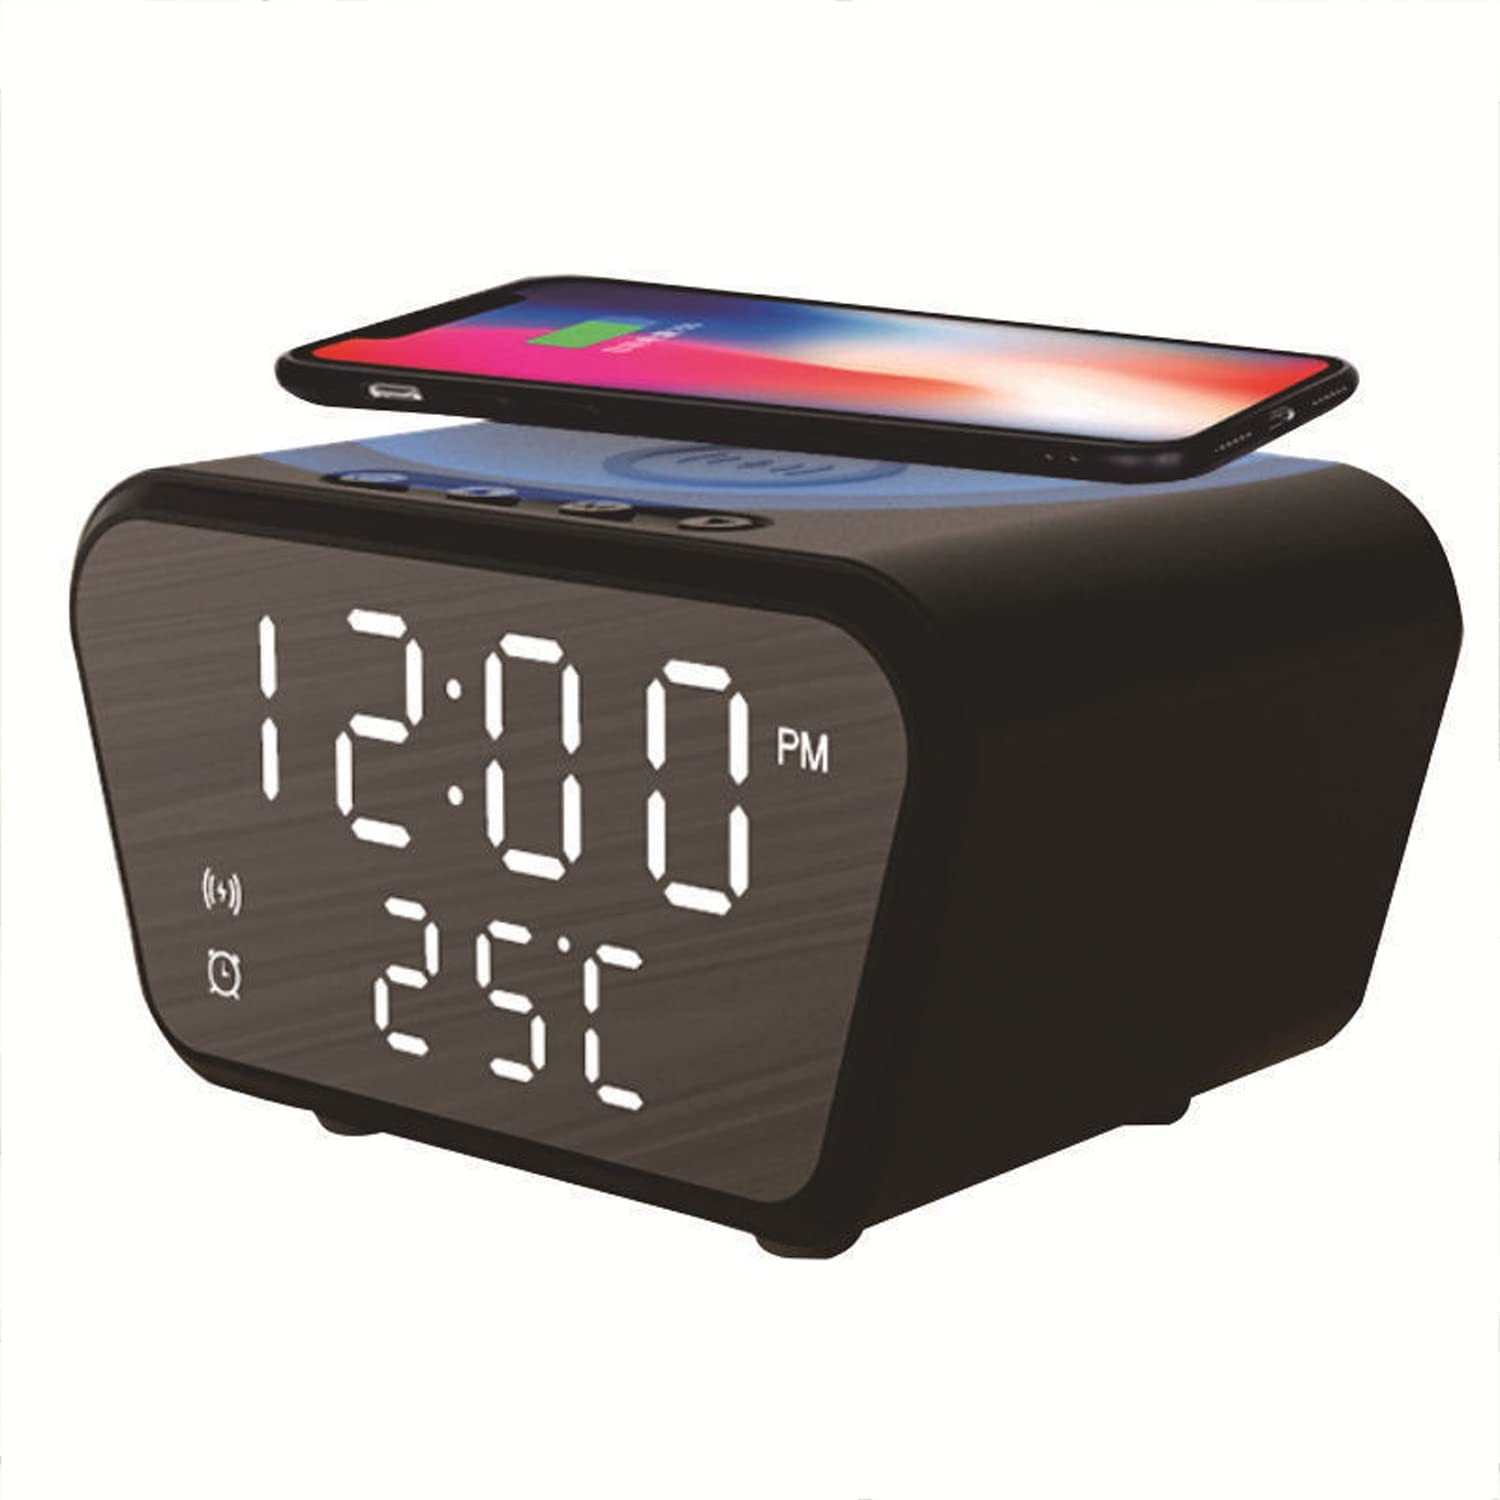 ساعت رومیزی با شارژر بی سیم GGEROU Digital Alarm Clocks with Fast Wireless Charging - ارسال ۱۰ الی ۱۵ روز کاری